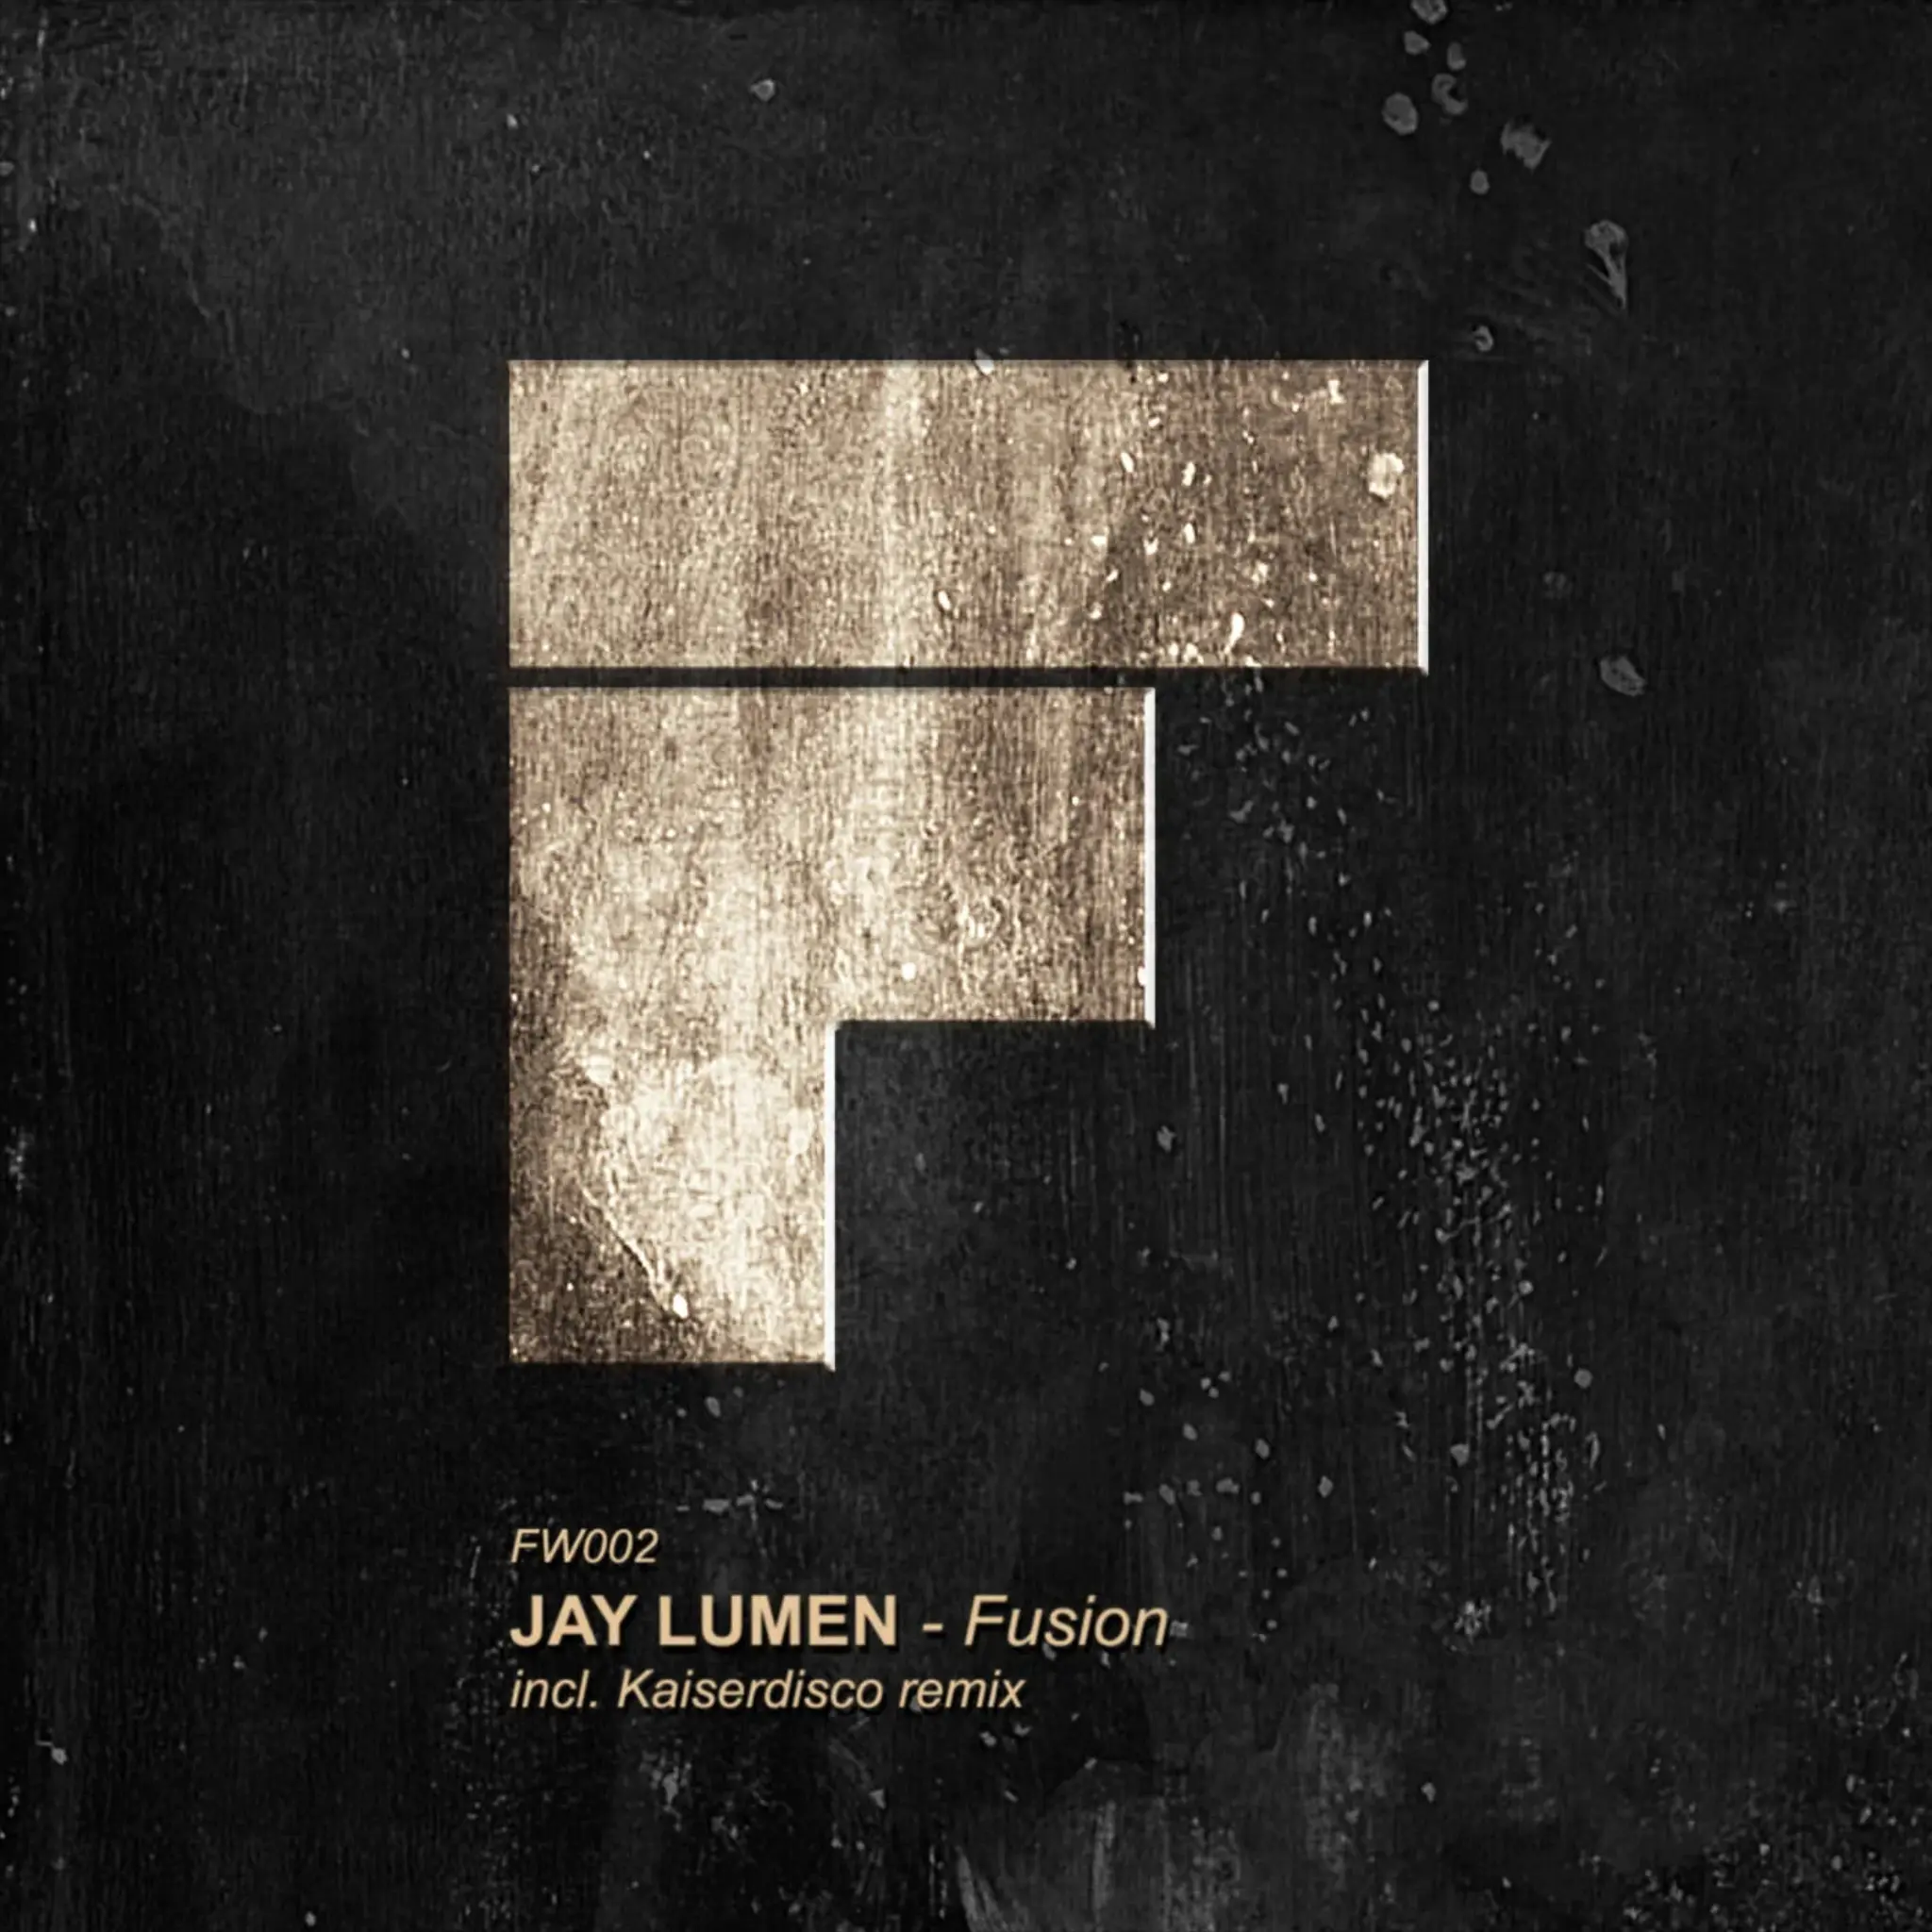 Jay Lumen - Fusion